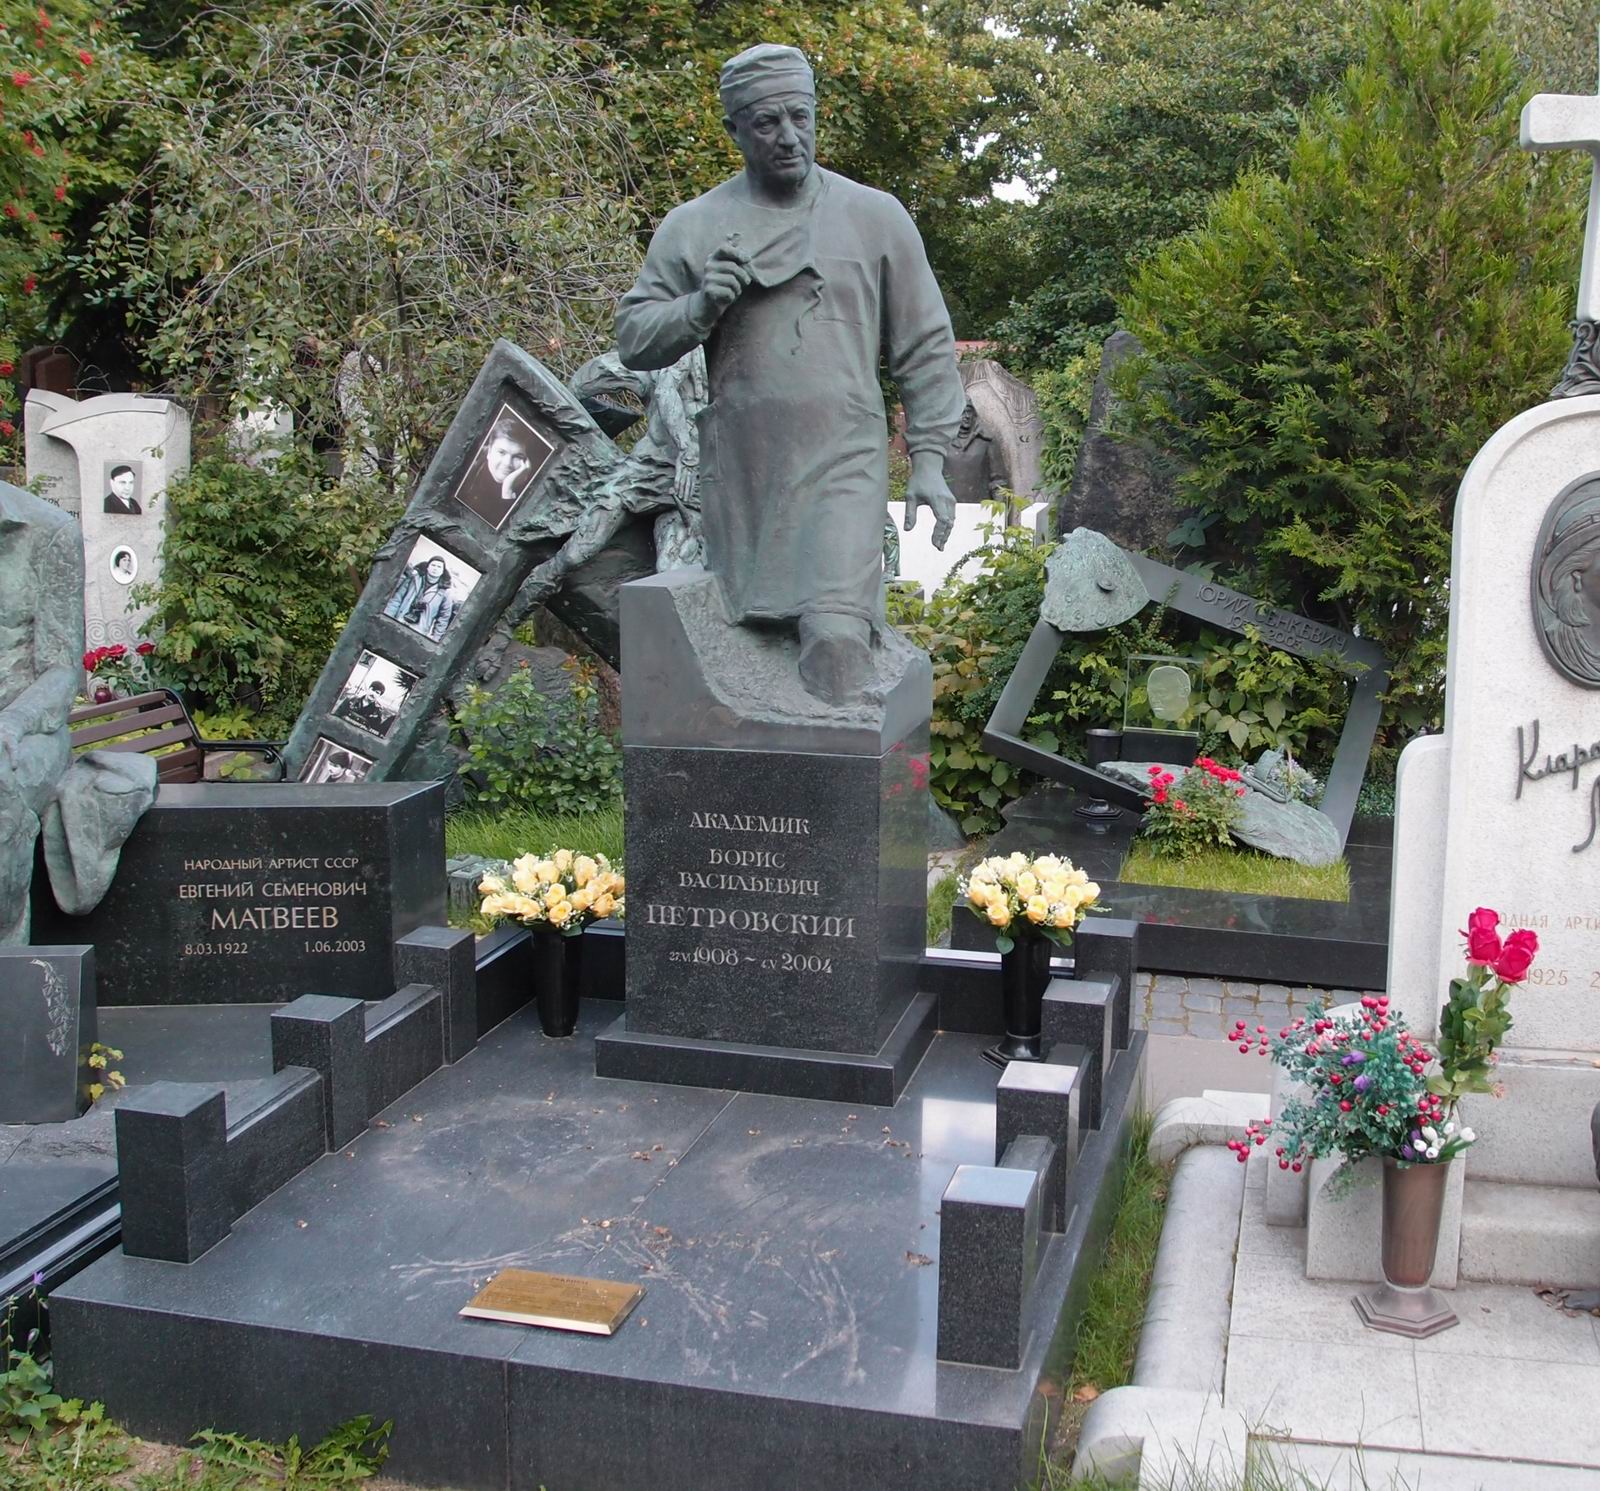 Памятник на могиле Петровского Б.В. (1908-2004), ск. И.Яворский, А.Демин, на Новодевичьем кладбище (10-9-12).